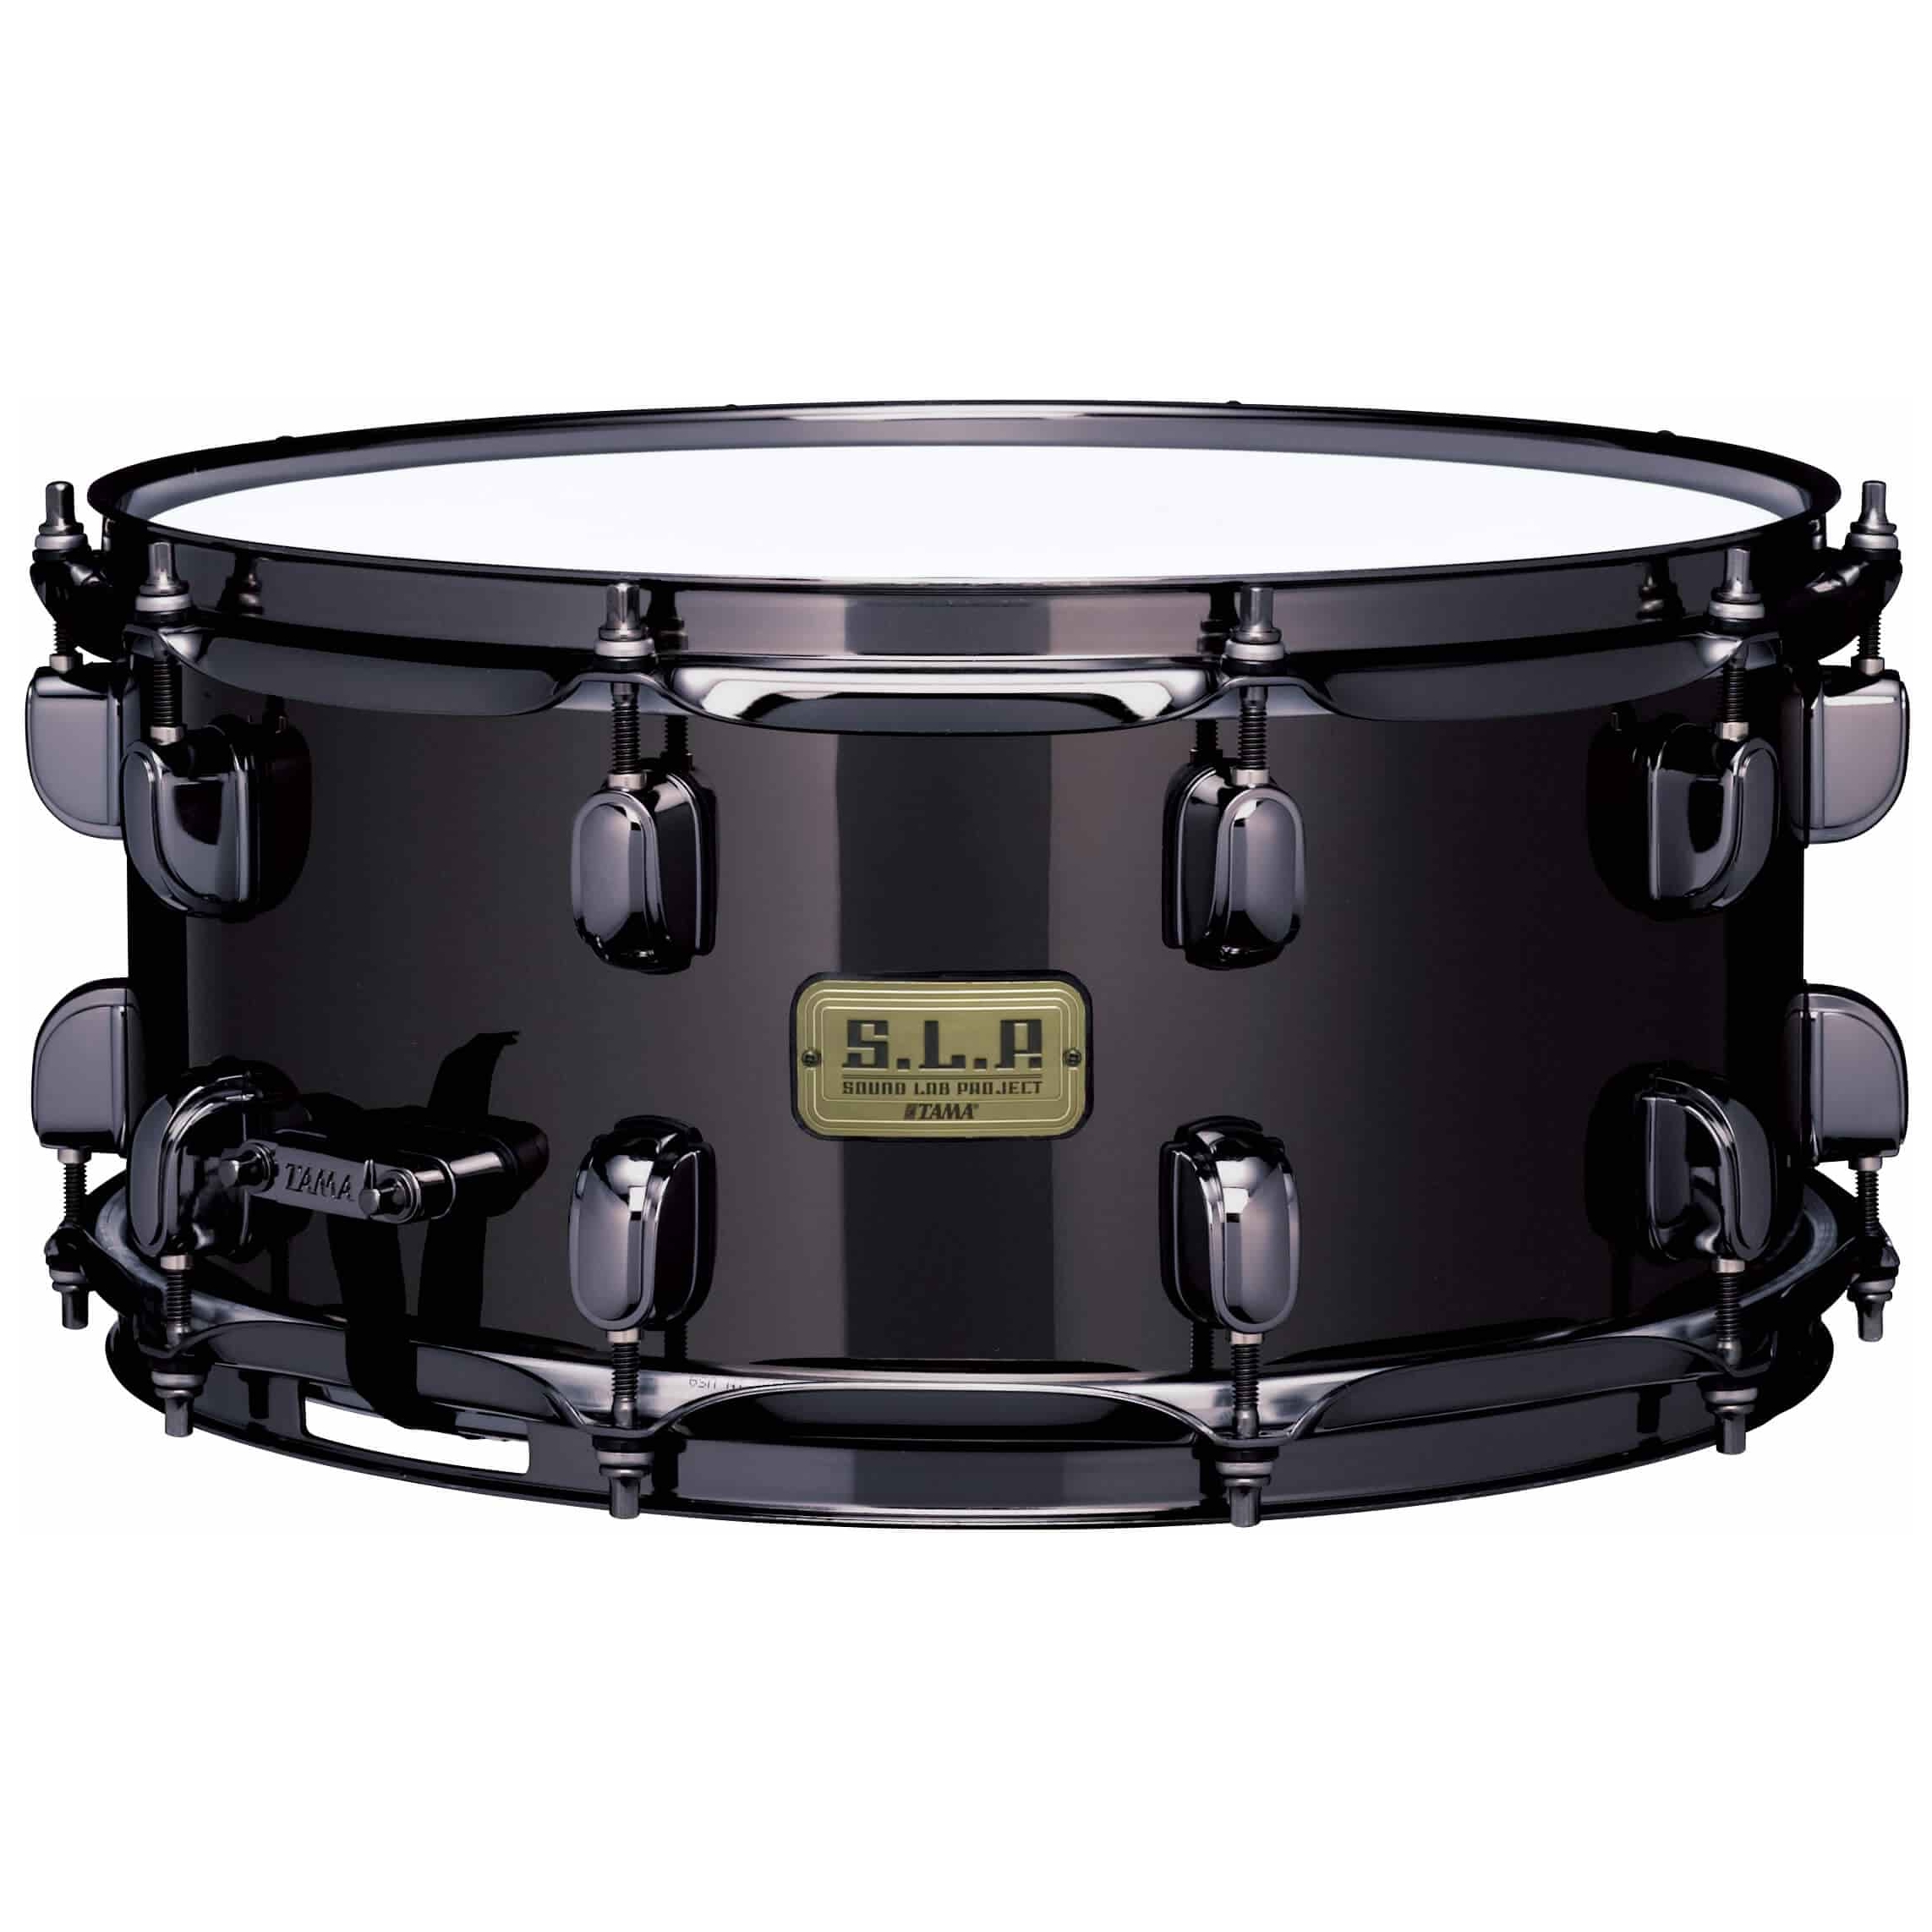 Tama LBR1465 14" x 6,5" SD - S.L.P. - Black Brass